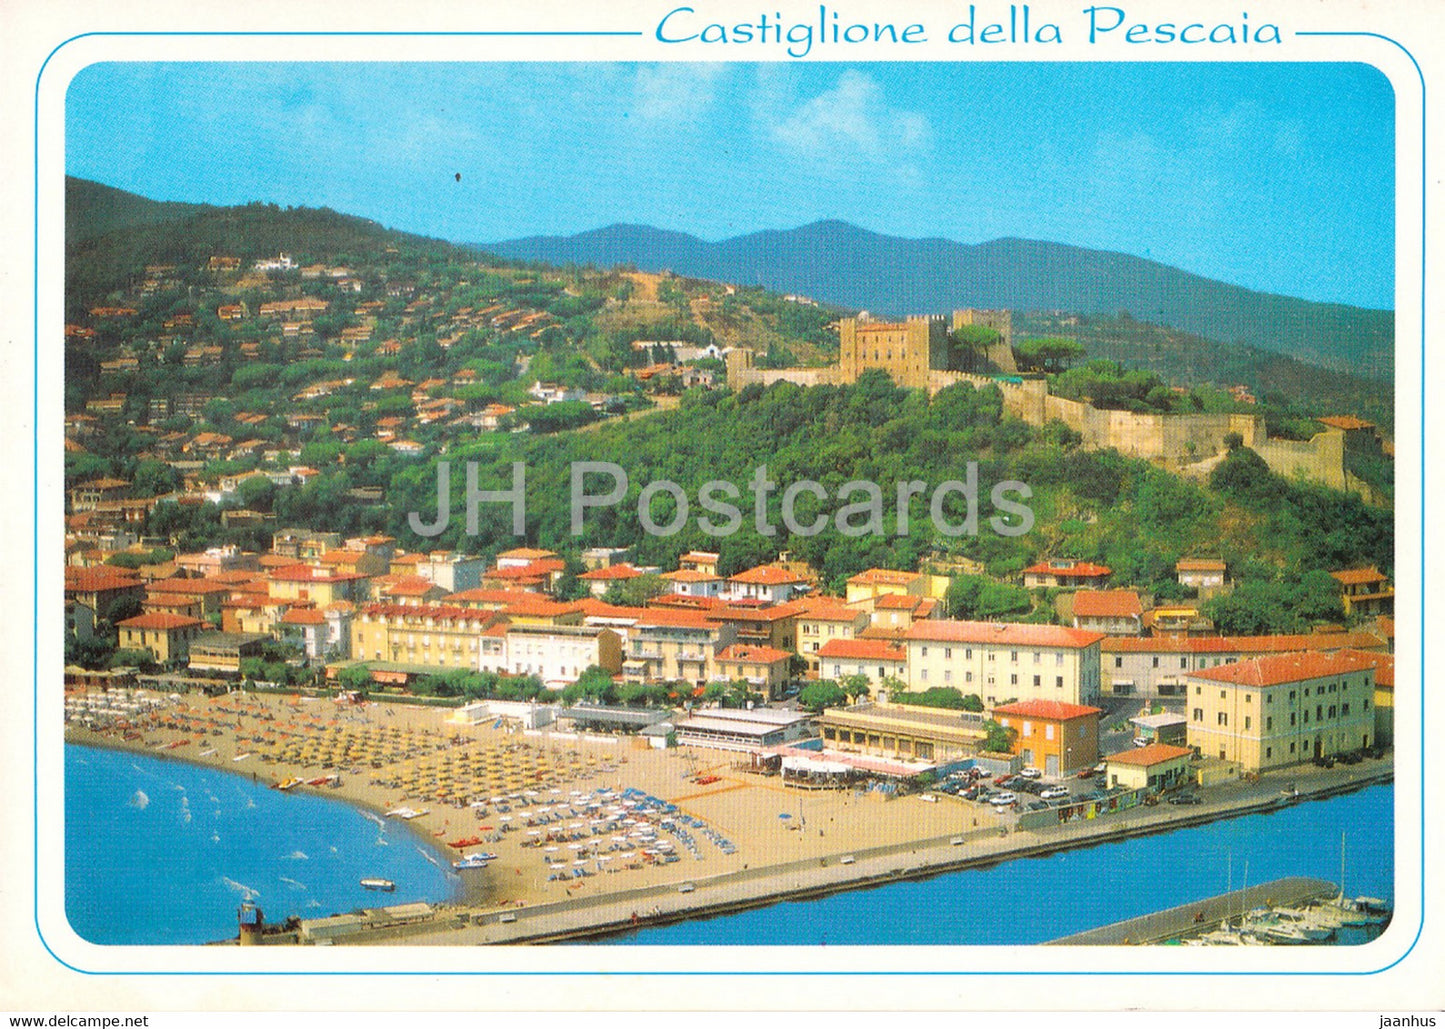 Castiglione della Pescaia - Grosseto - Italy - Italia - used - JH Postcards